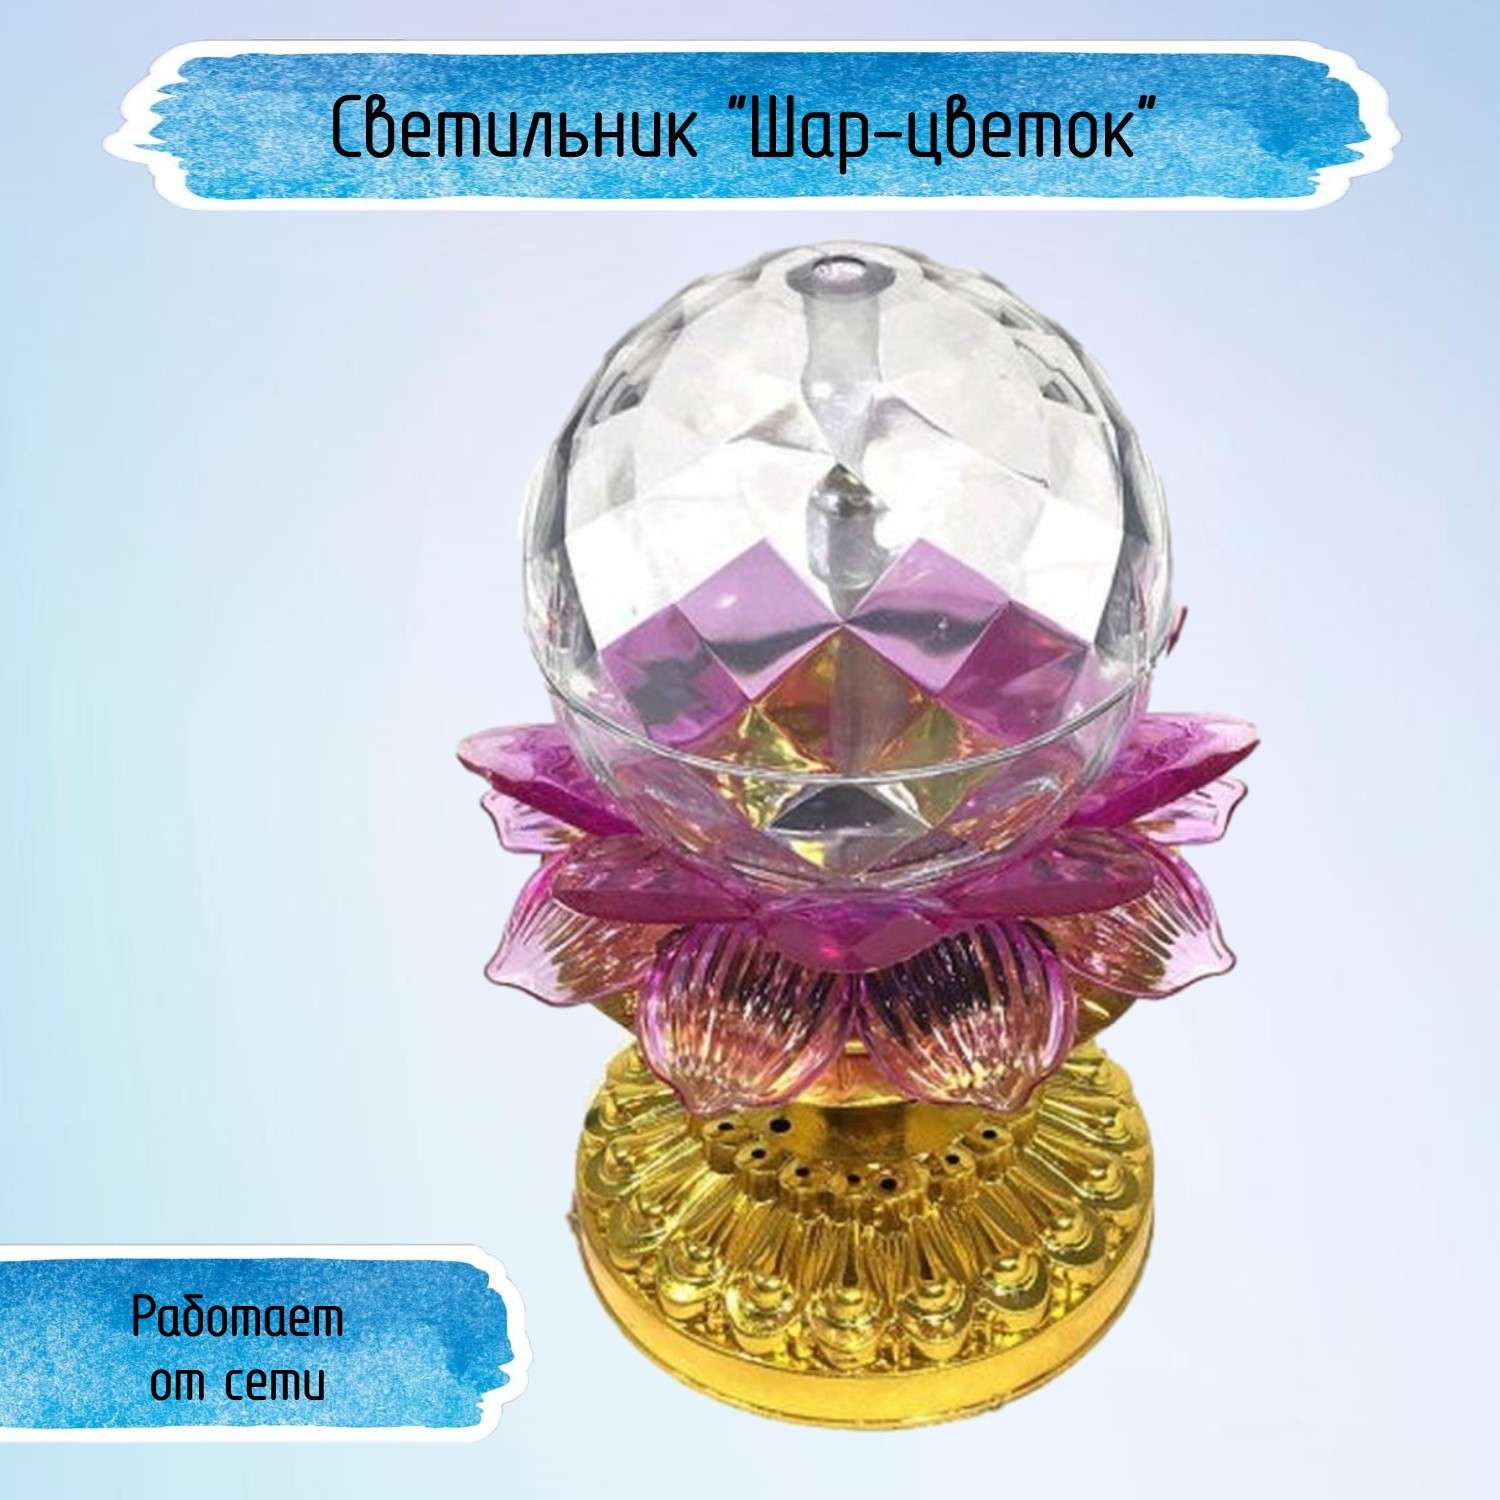 Светильник Uniglodis Светодиодный диско-шар Цветок на подставке - фото 1